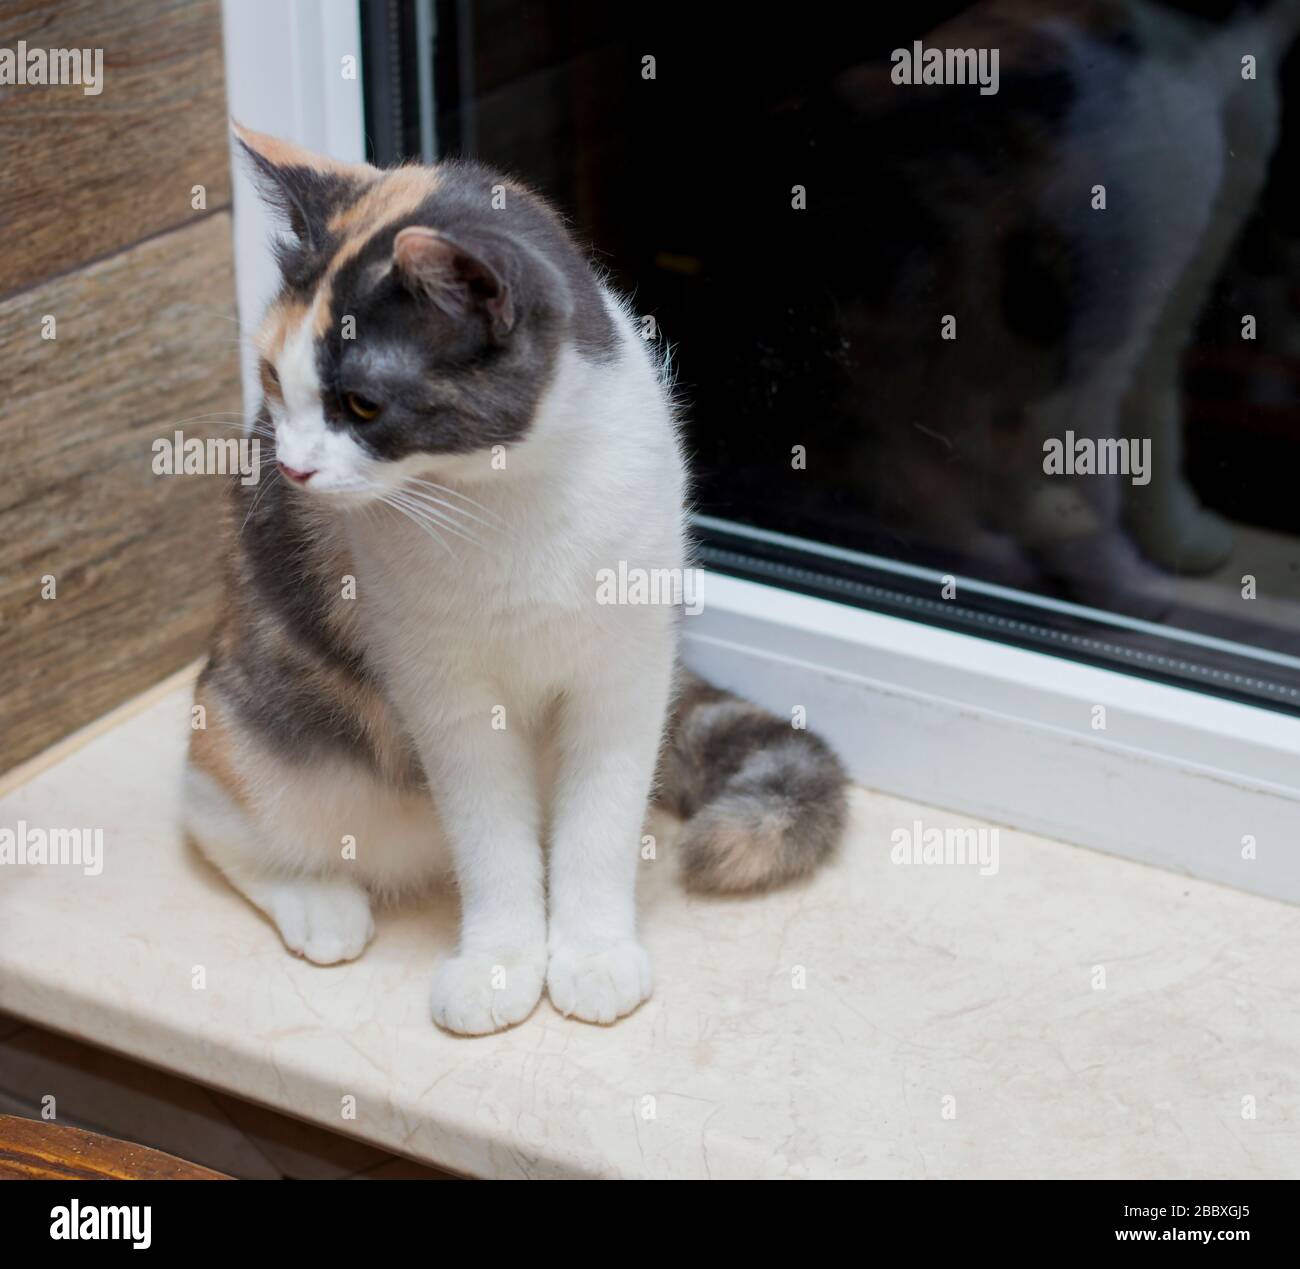 gatto macchiato seduto sul davanzale, il tema dei gatti domestici Foto Stock